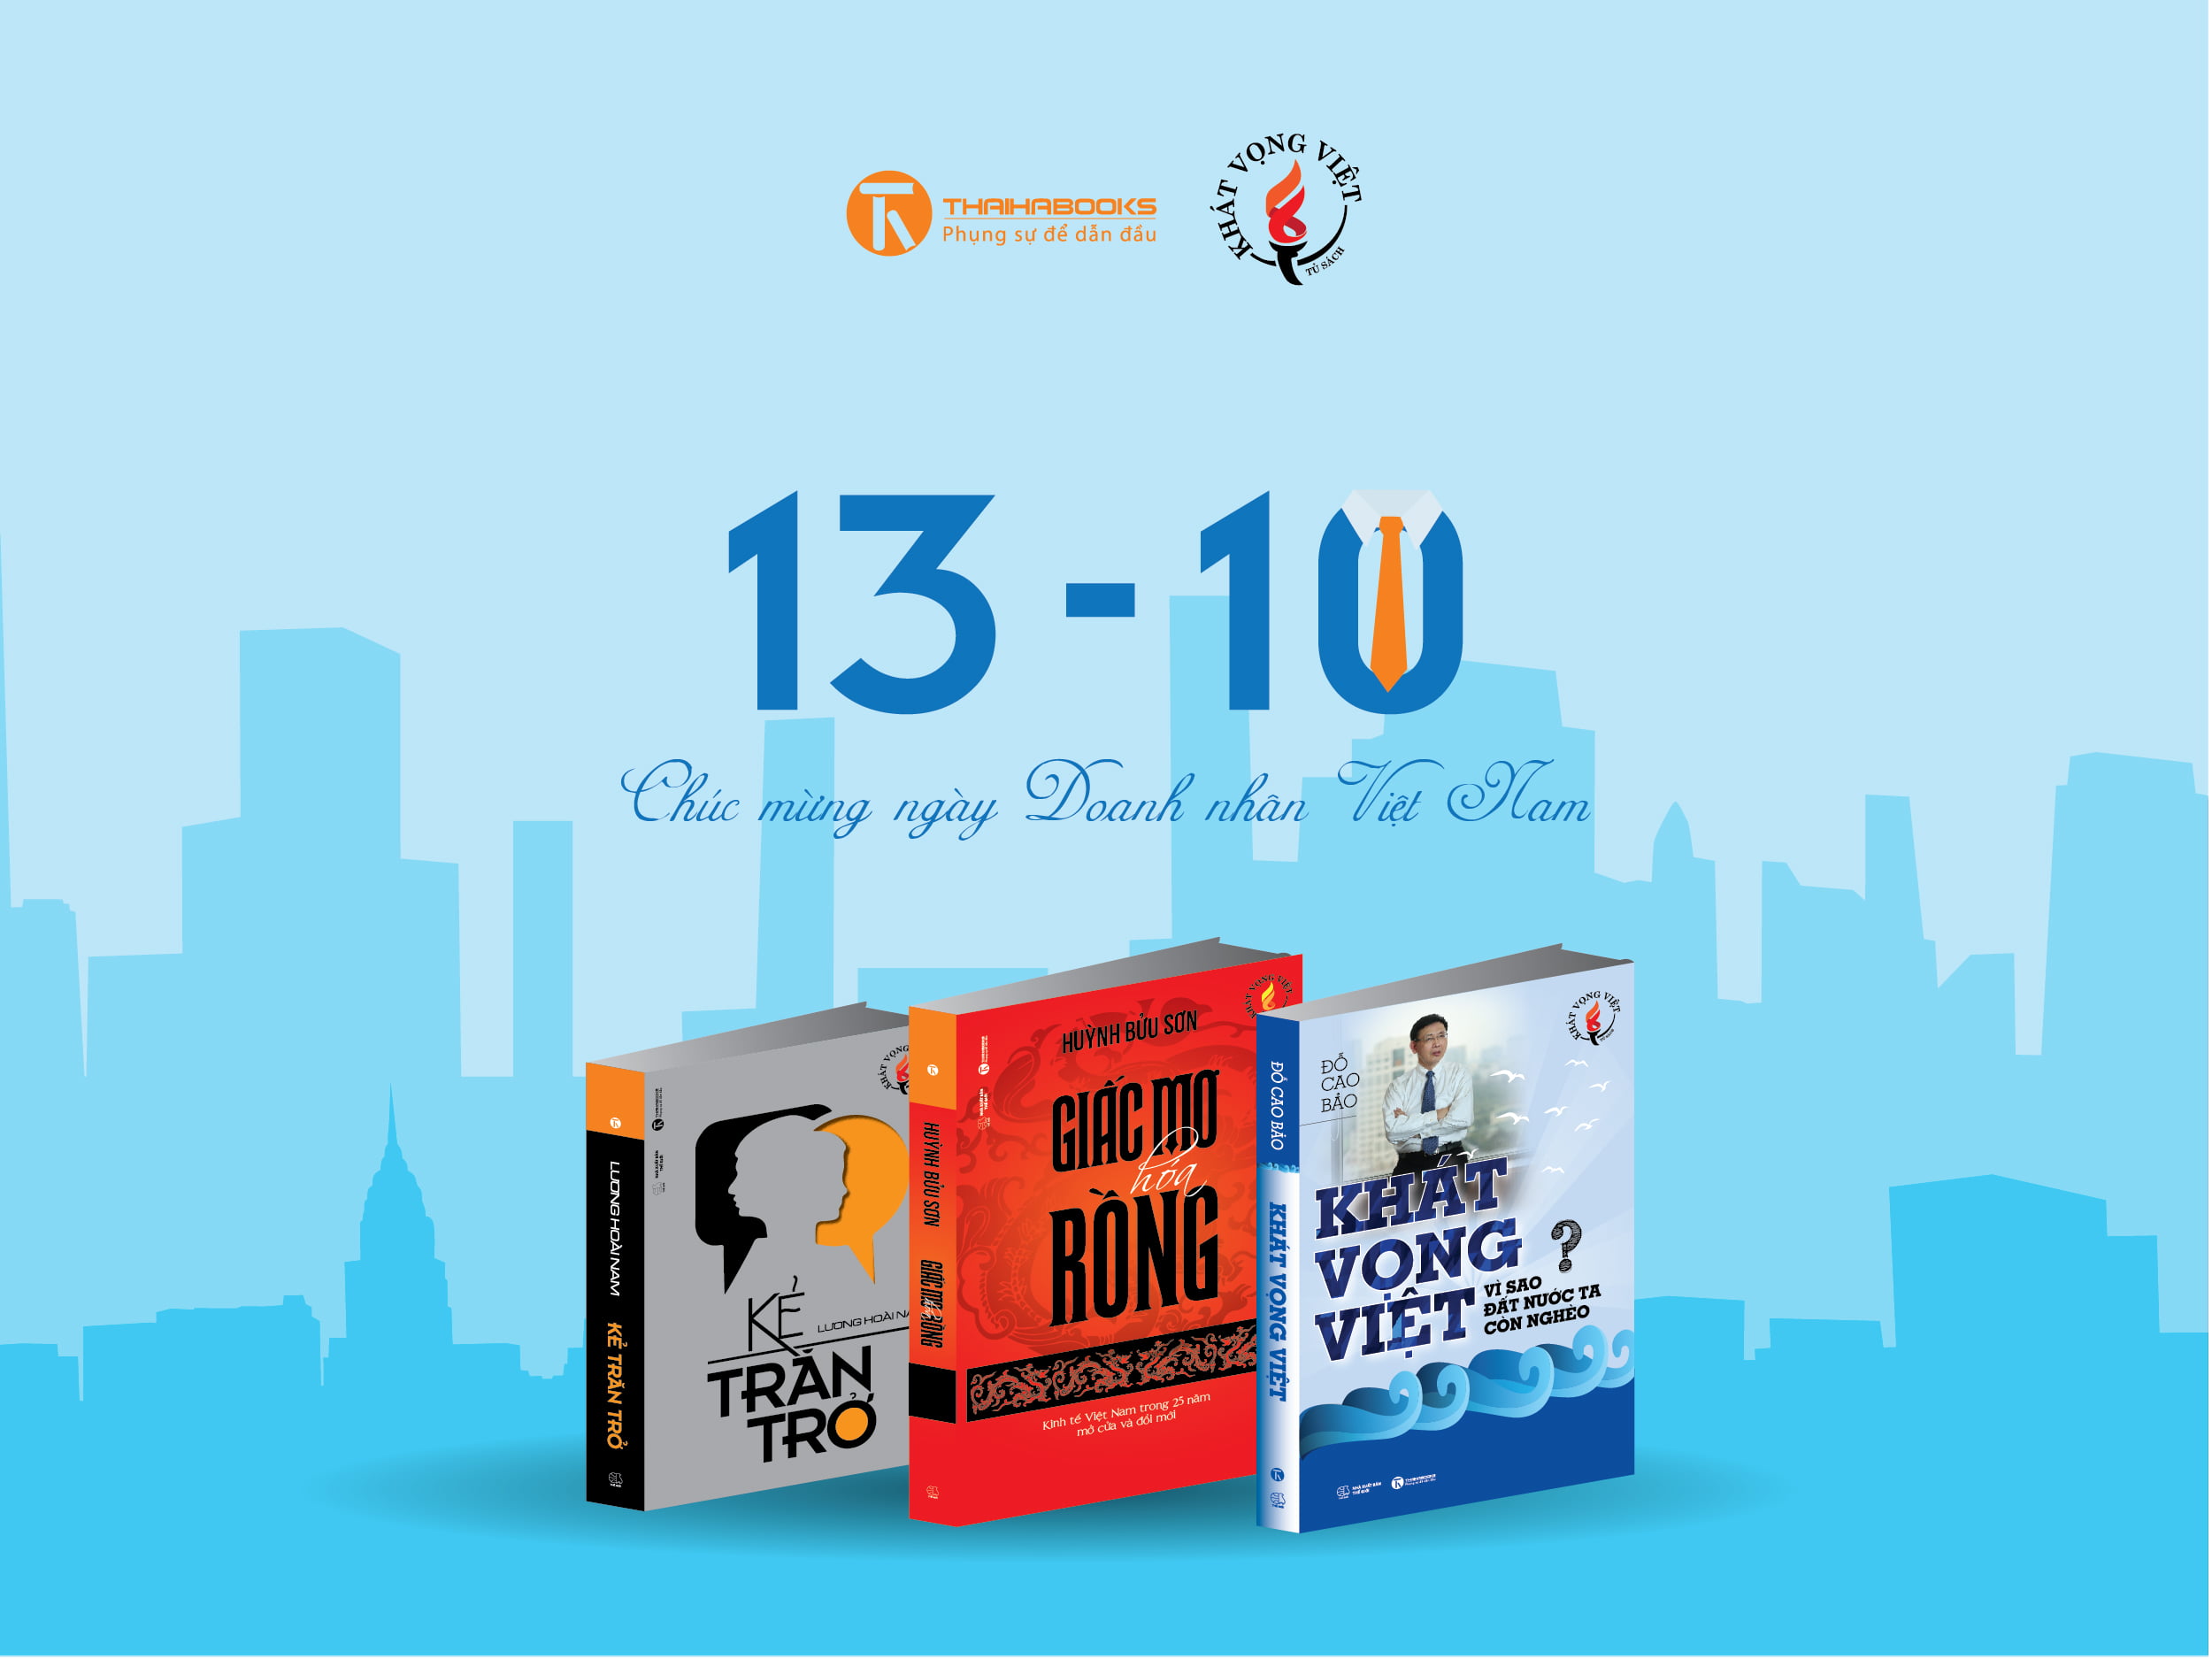 Thái Hà Books ra mắt dòng sách mới “Khát Vọng Việt